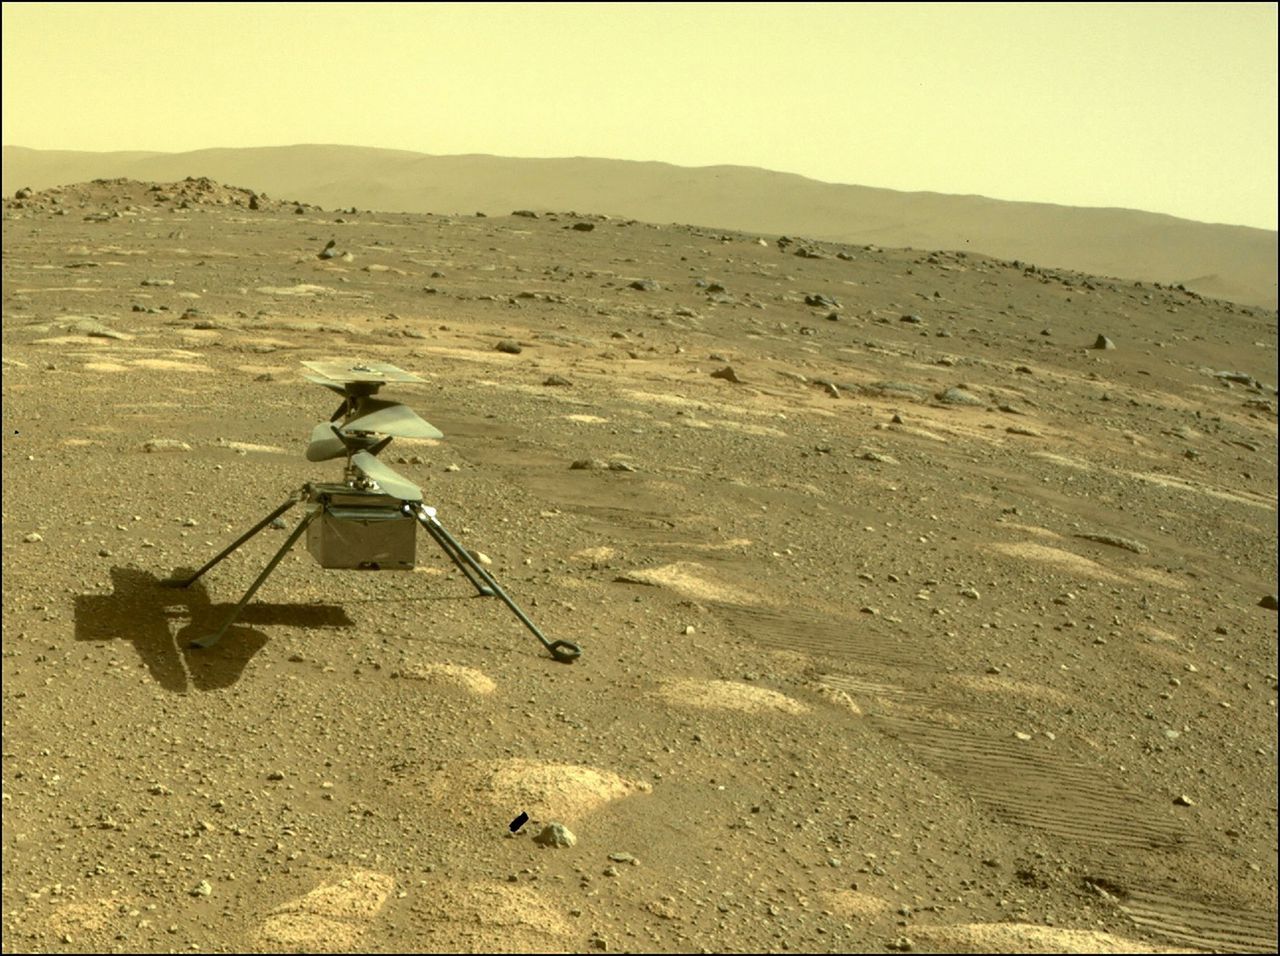 Het helikoptertje ‘Ingenuity’ op het Marsoppervlak, gezien door de achteruitkijkcamera van Marsrover Perseverance.